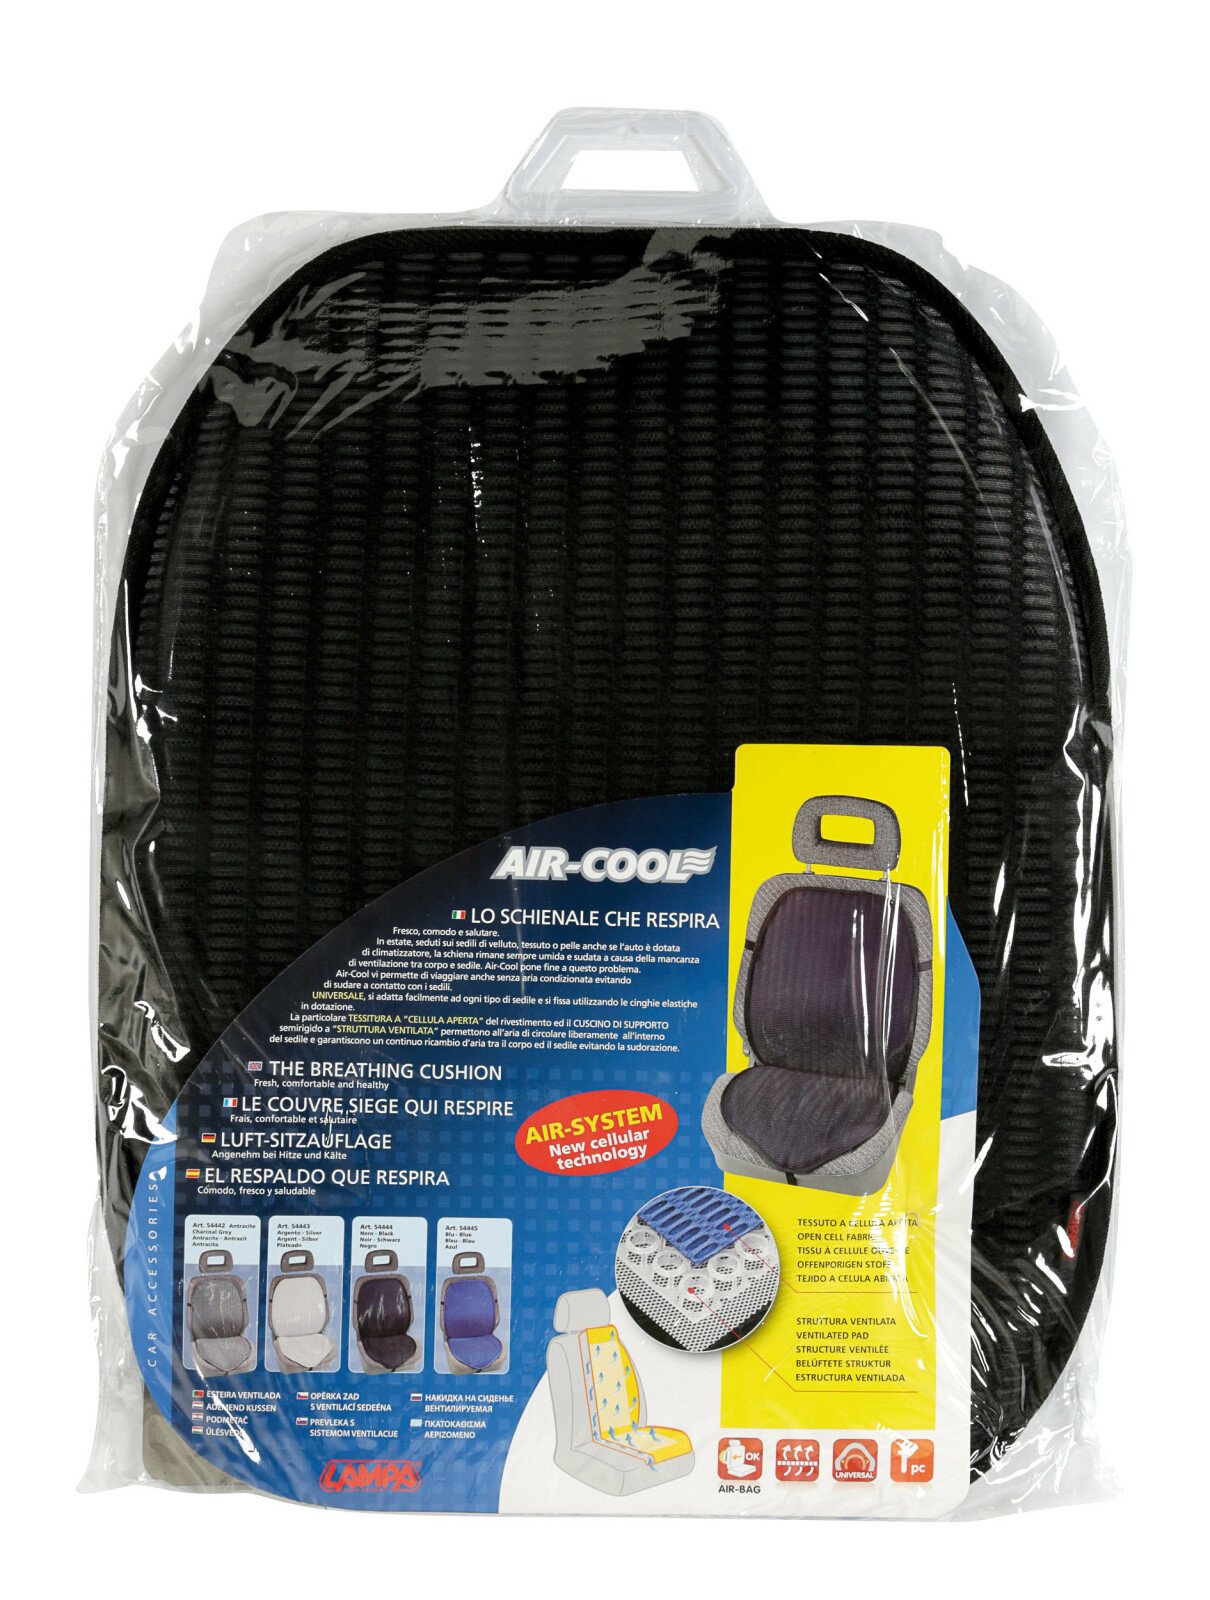 Air-Cool lélegzős üléshuzat 1 darabos - Fekete thumb